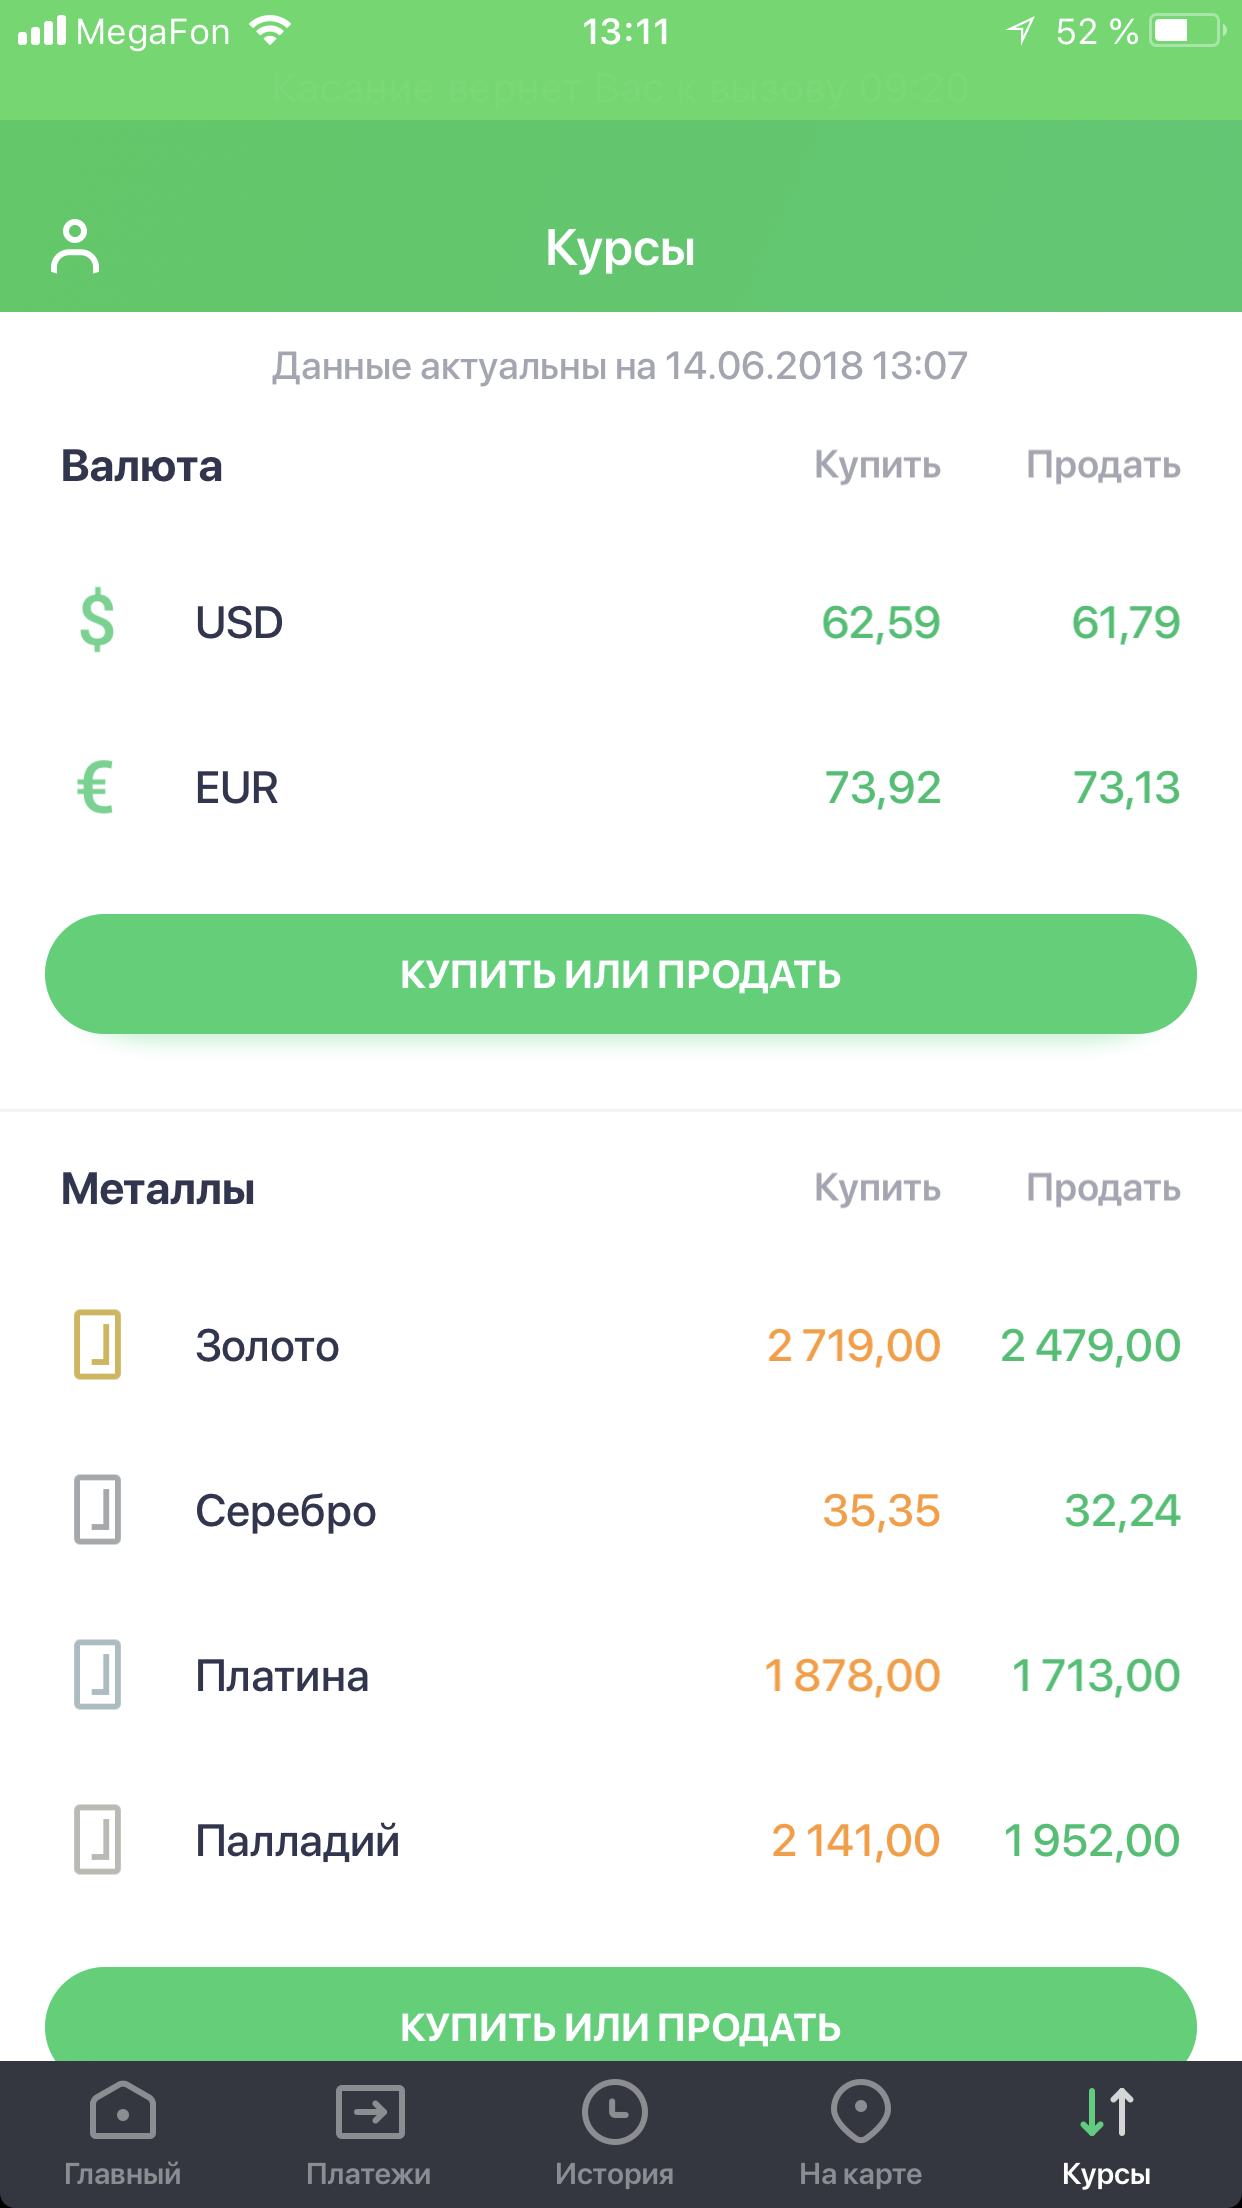 Сбербанк обмен валюты евро сколько стоит 55000 биткоинов в рублях